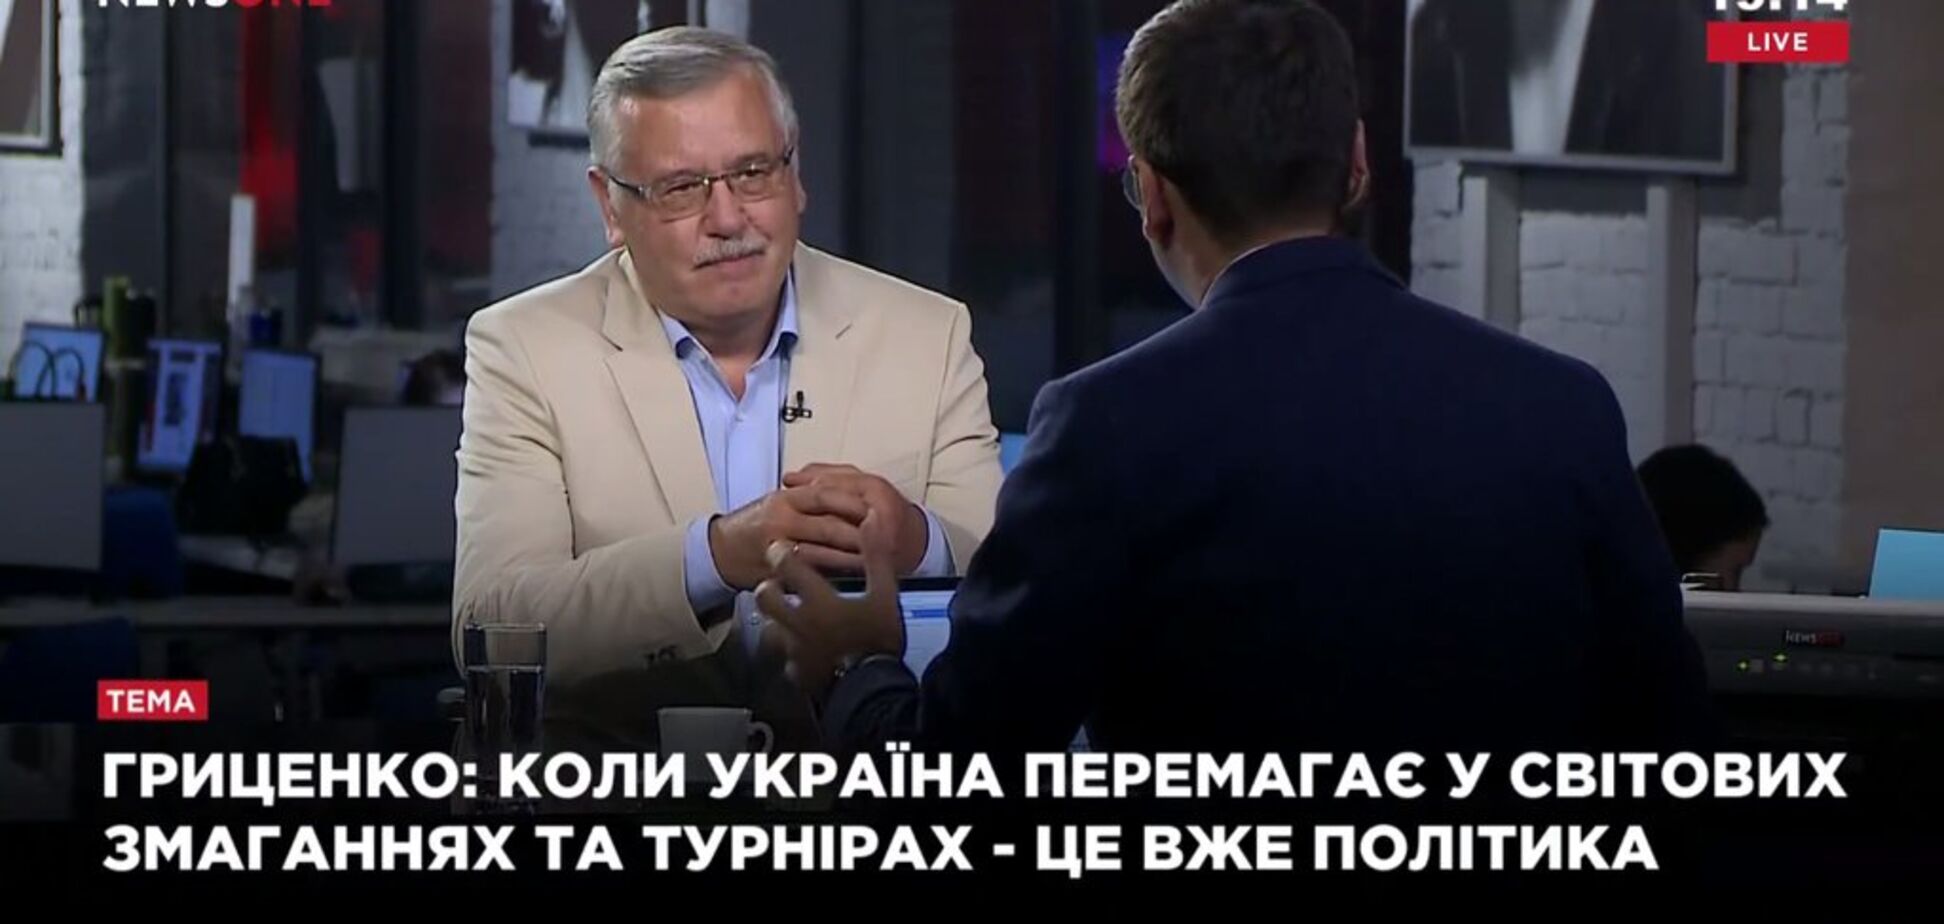 'Чтобы шло от корней': Гриценко сказал, что нужно украинскому спорту